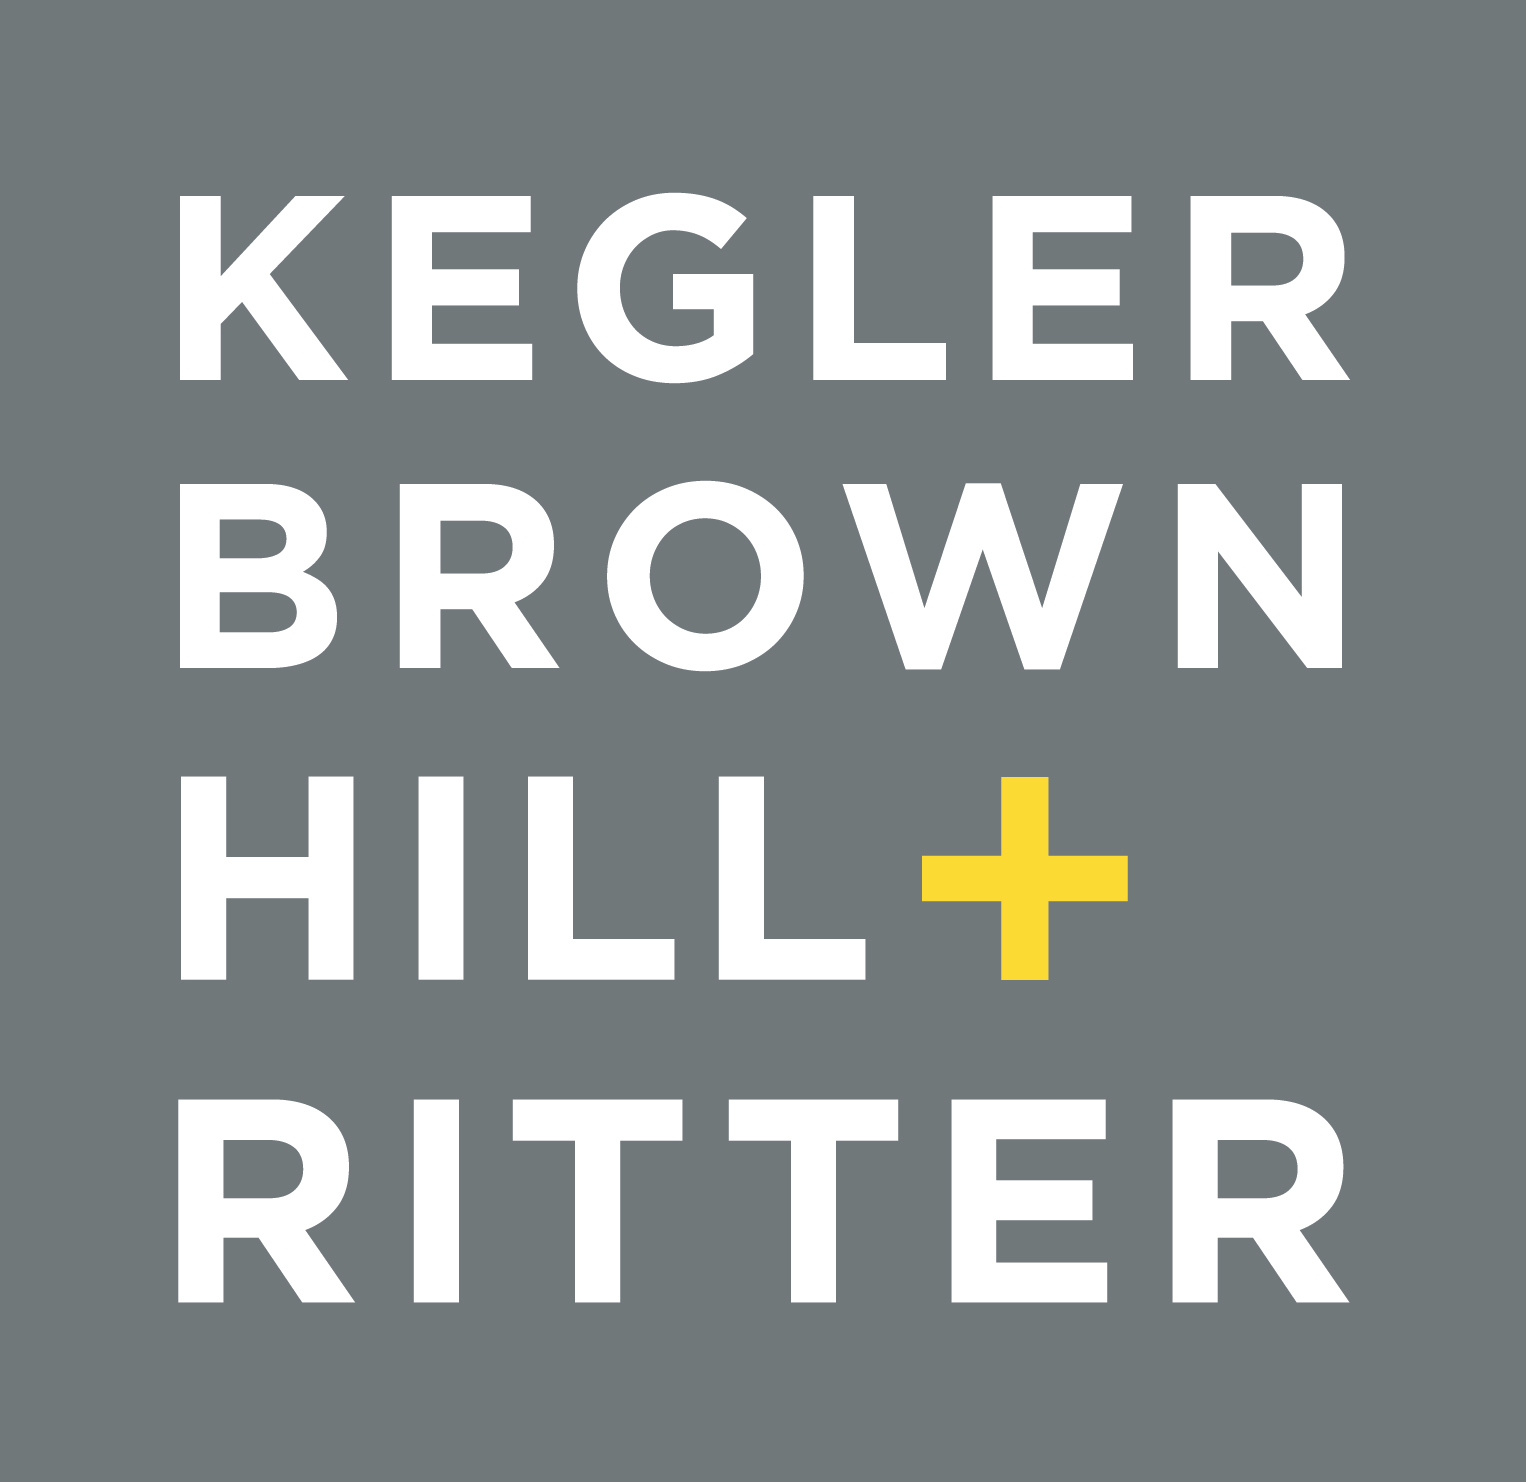 Kegler Brown Hill & Ritter